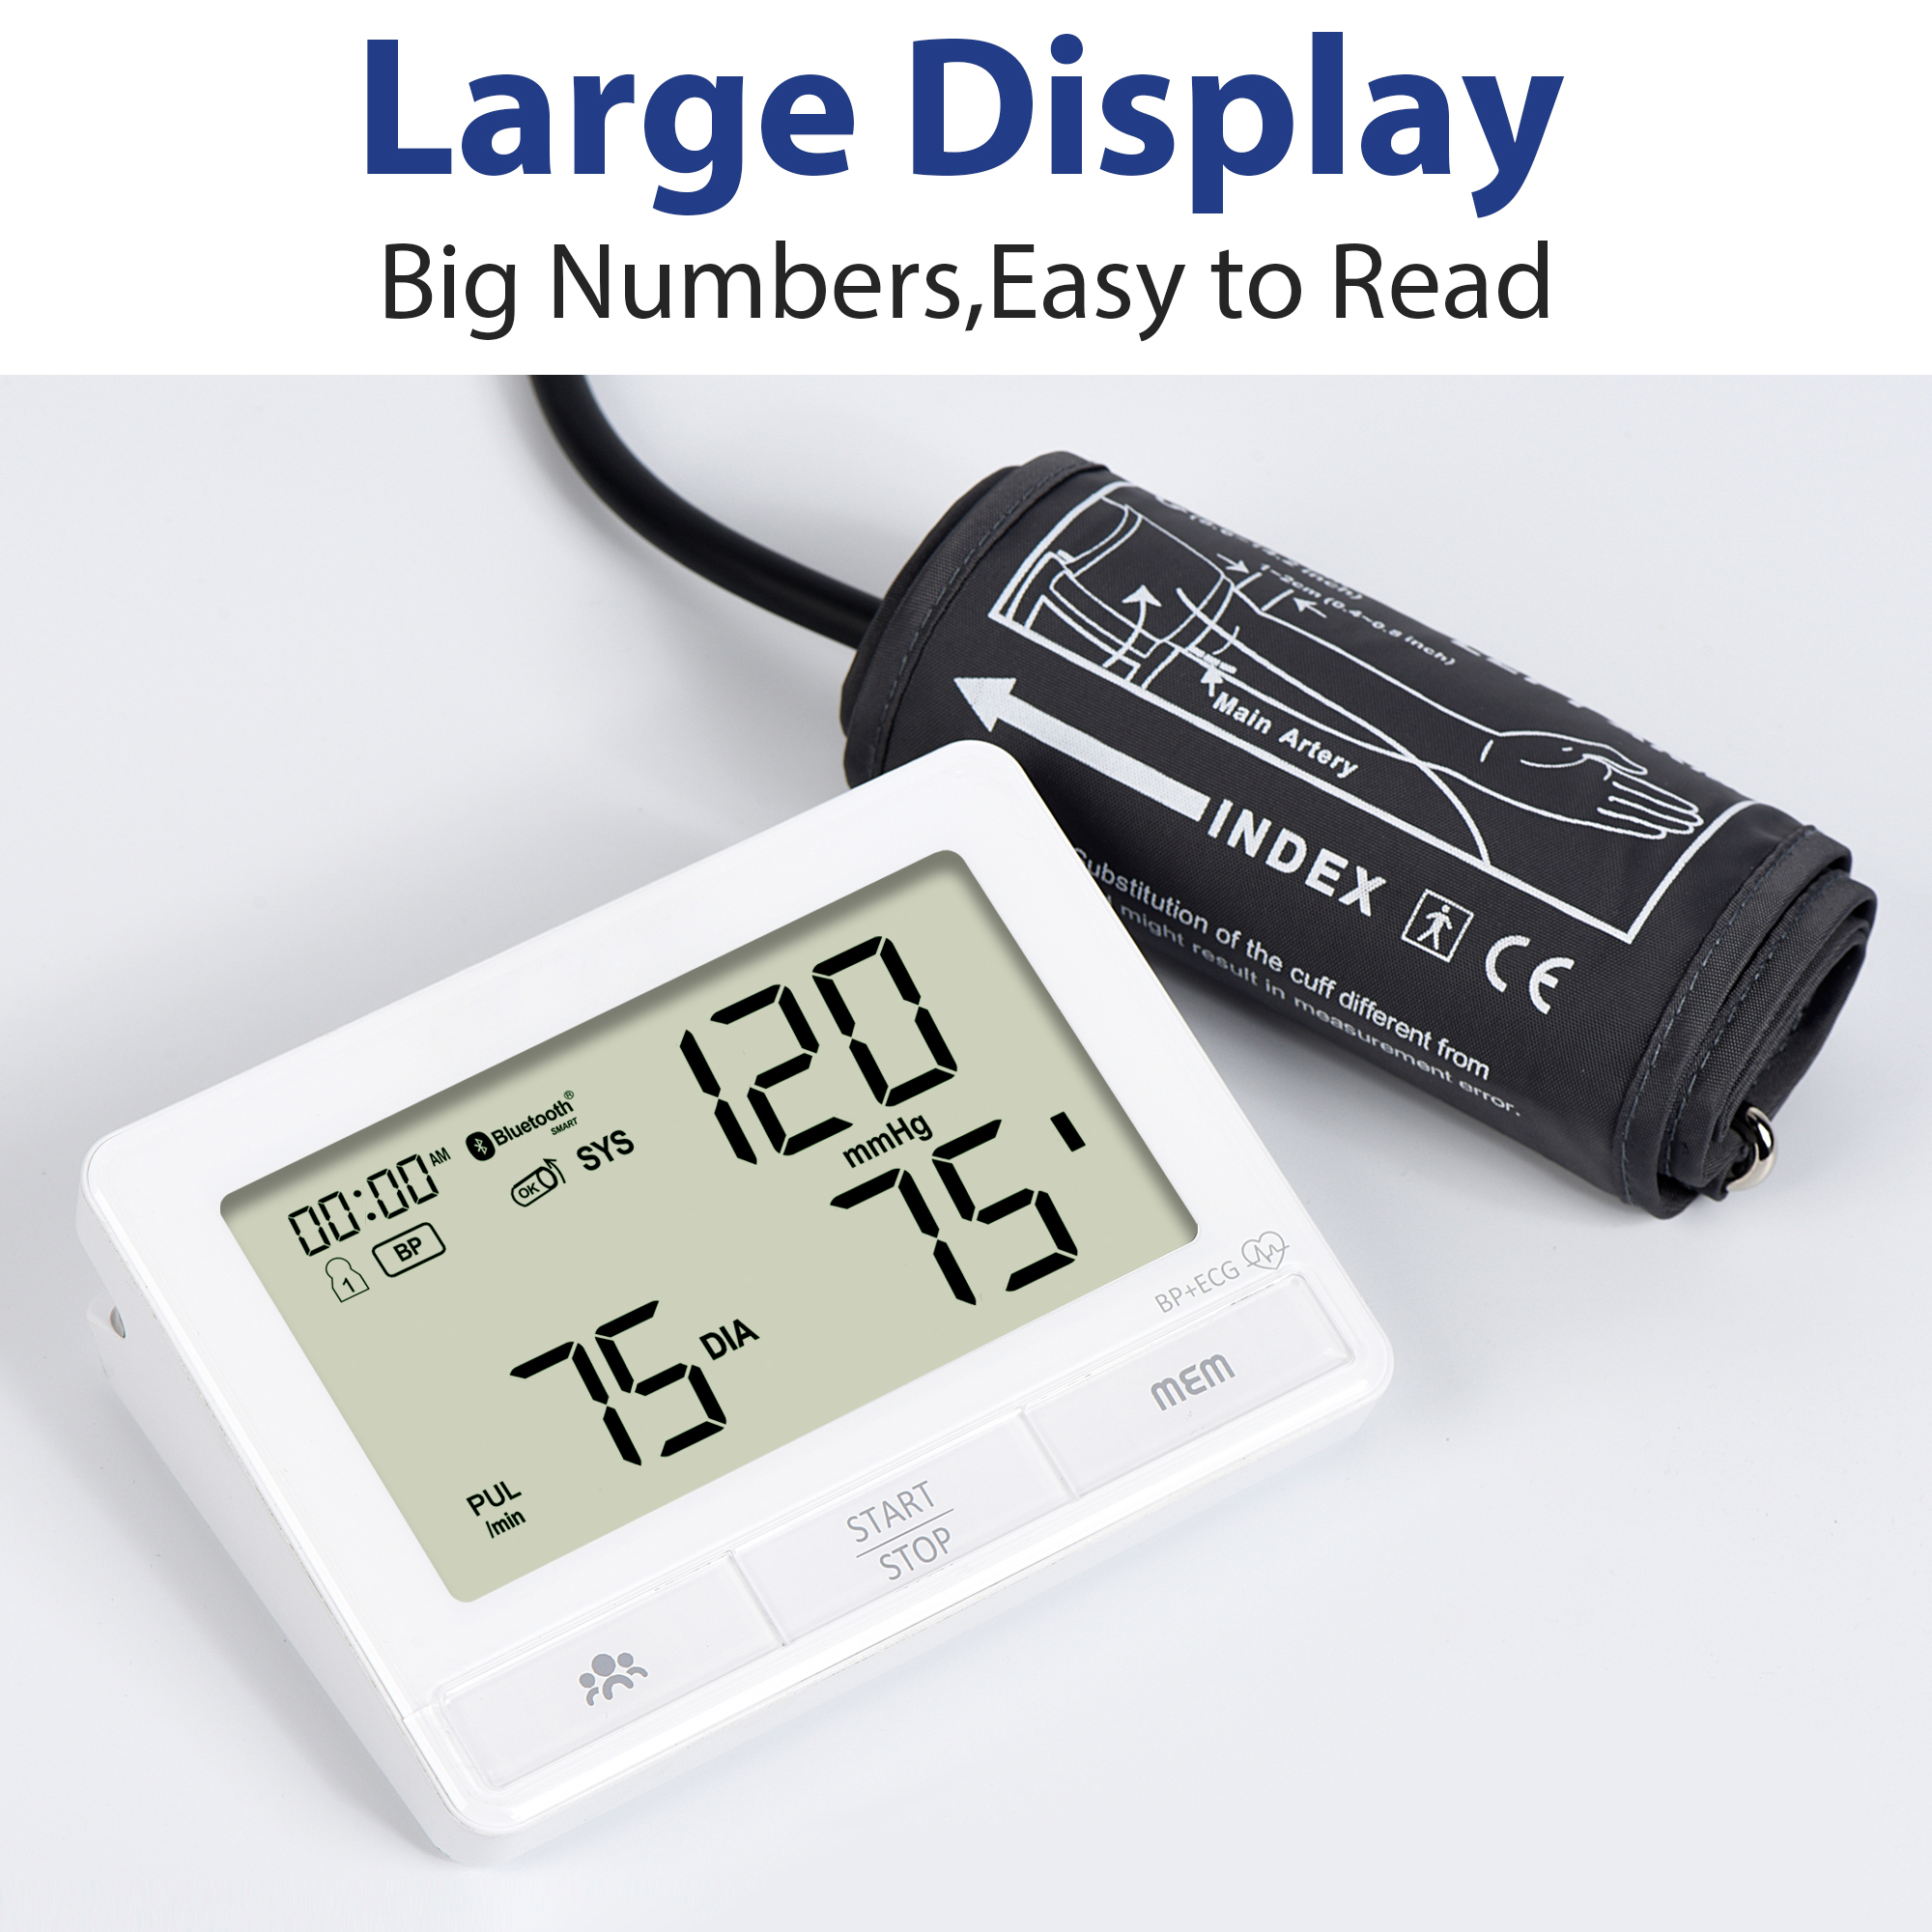 O esfigmomanômetro de mercúrio é melhor que os monitores digitais de pressão arterial – Verdade ou Preconceito?